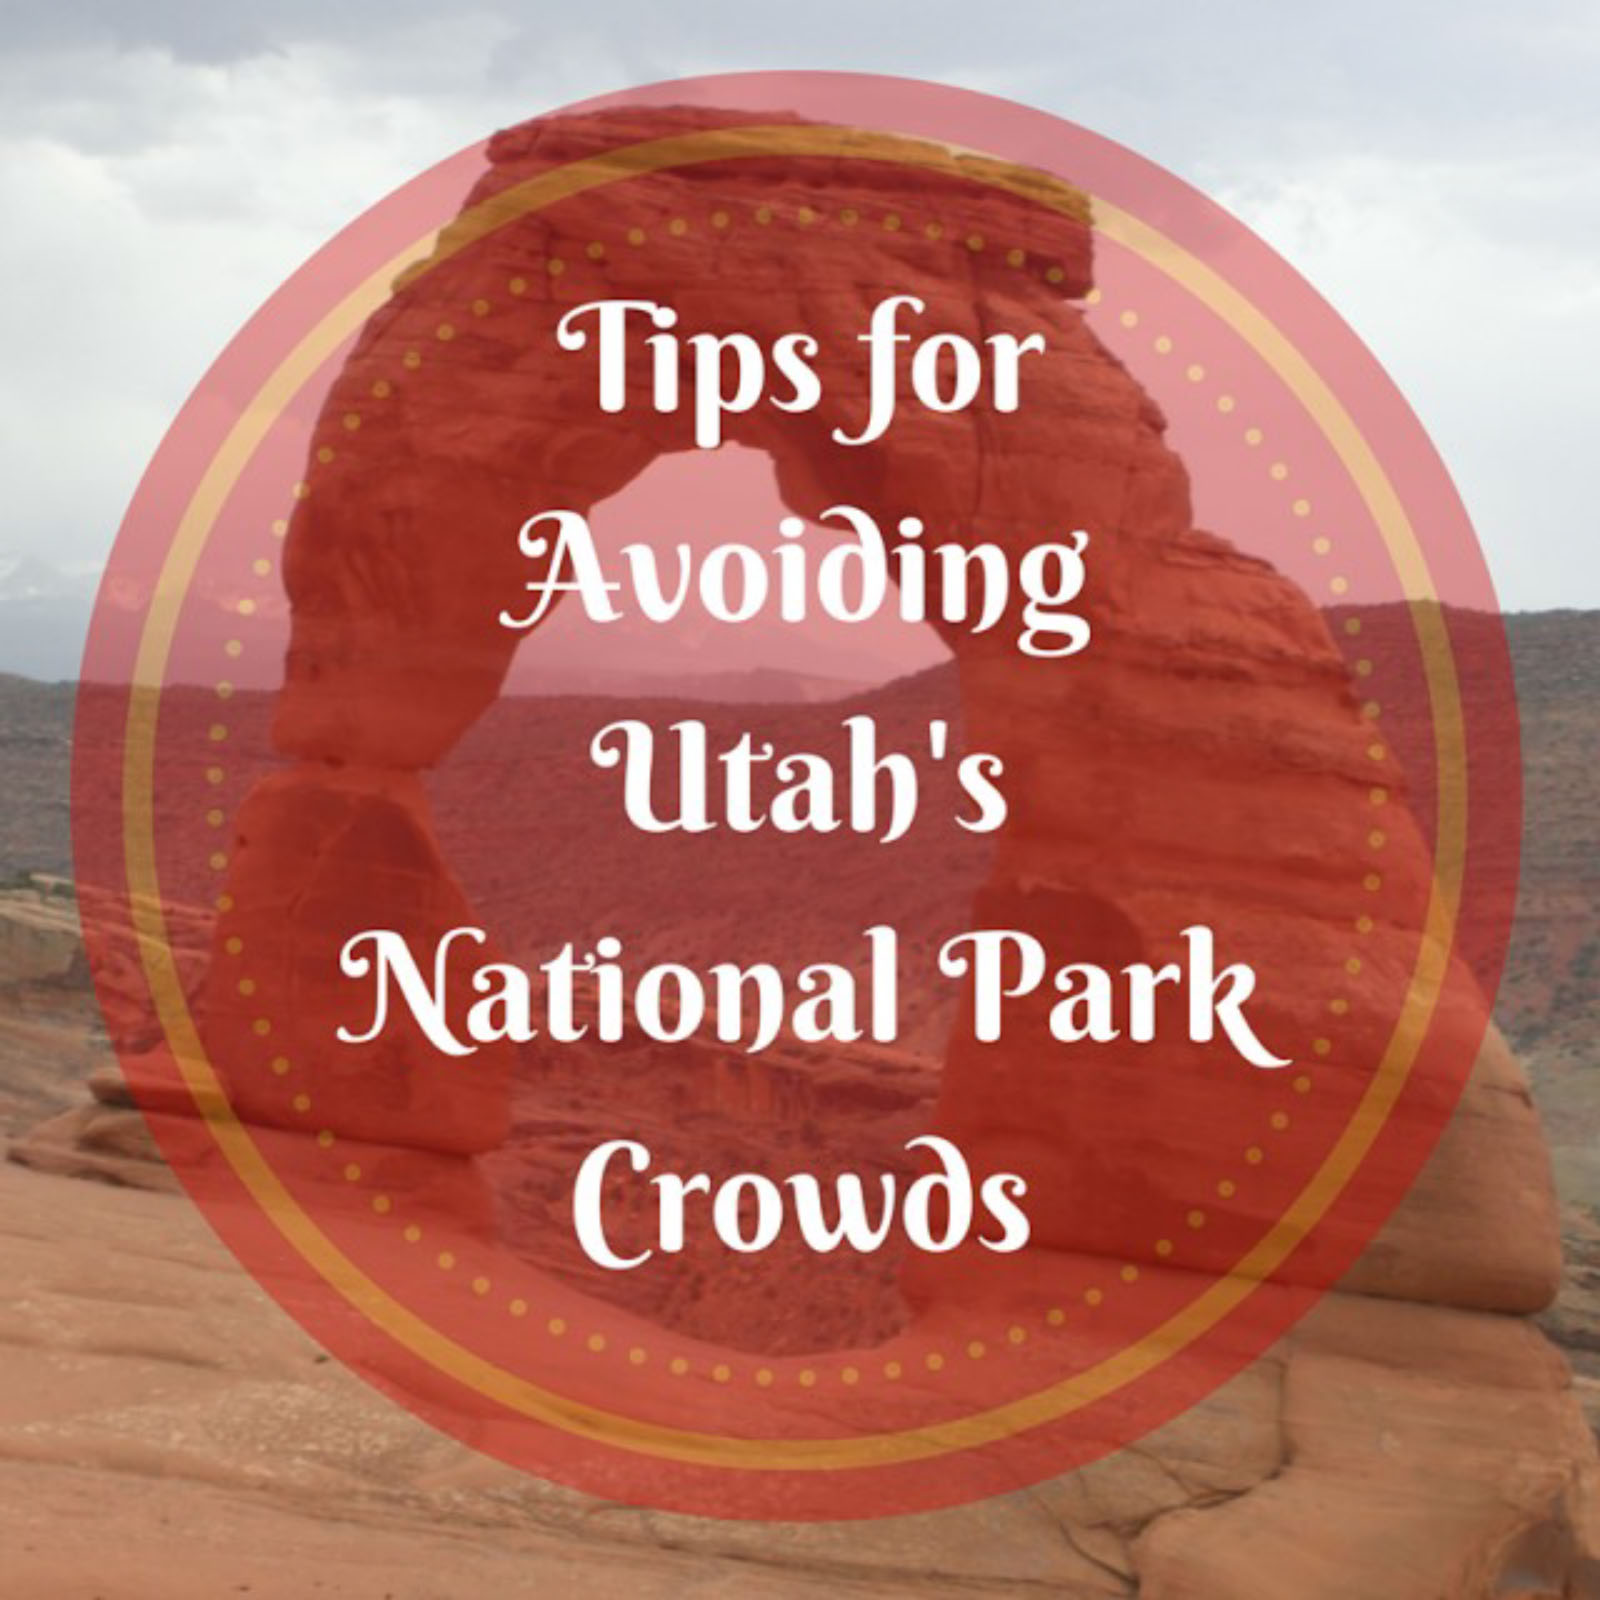 Tips for Avoiding Utah’s National Park Crowd